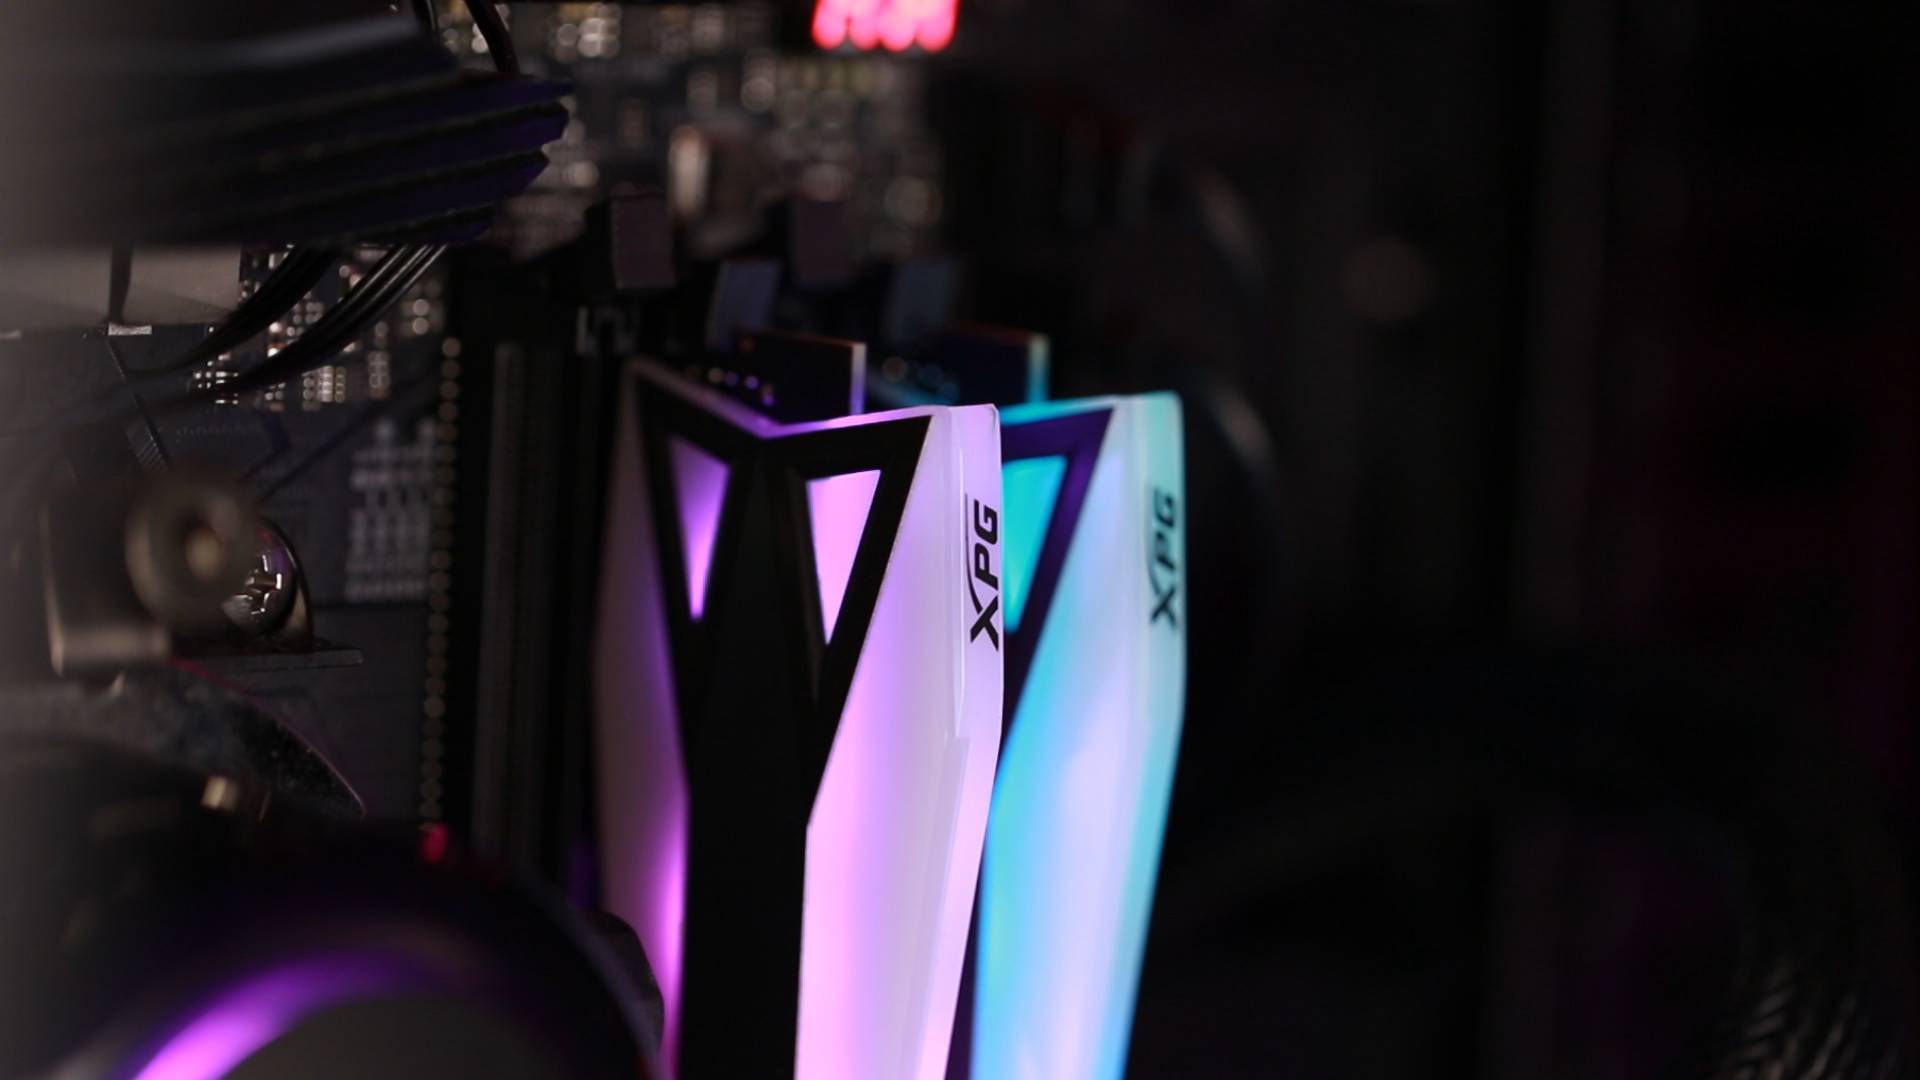 ثلاثة تجميعات للثلاثة معالجات في سلسلة AMD Ryzen XT الجديدة!